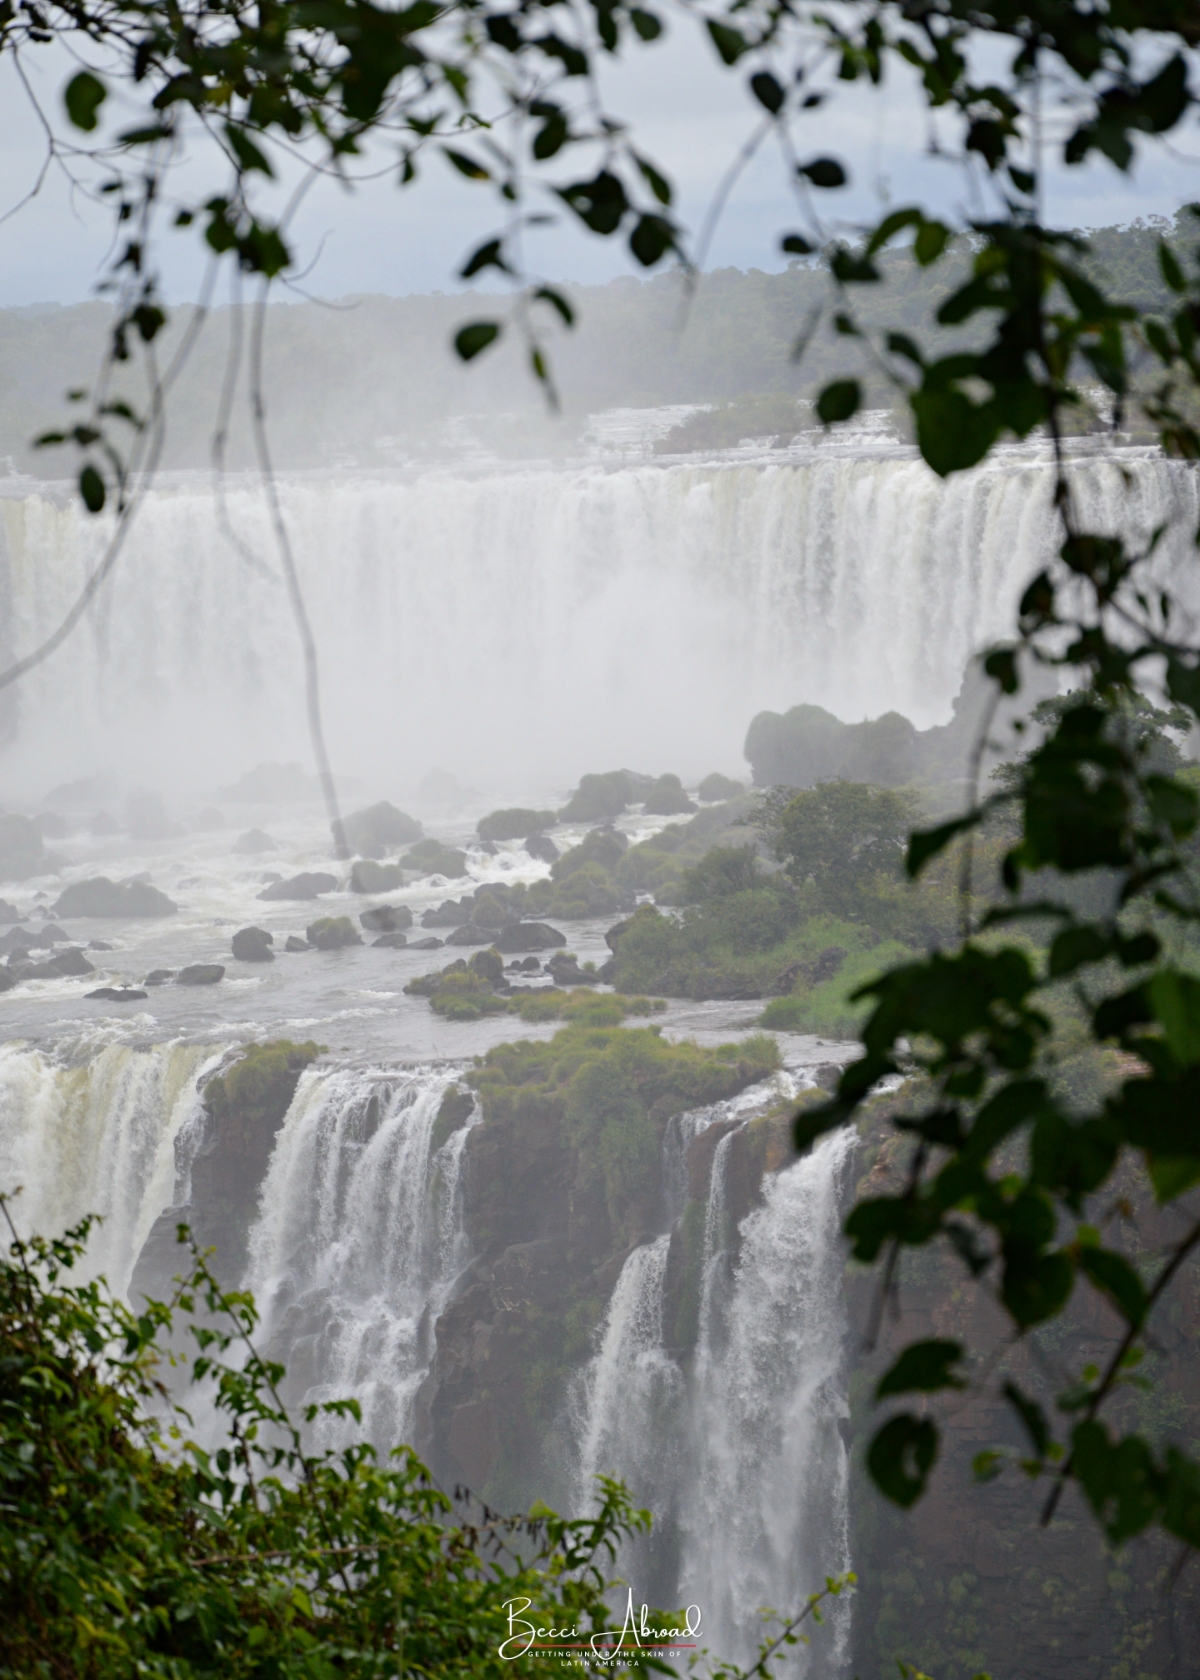 Alt hvad du behøver at vide om Iguazu-vandfaldene i Argentina og Brasilien